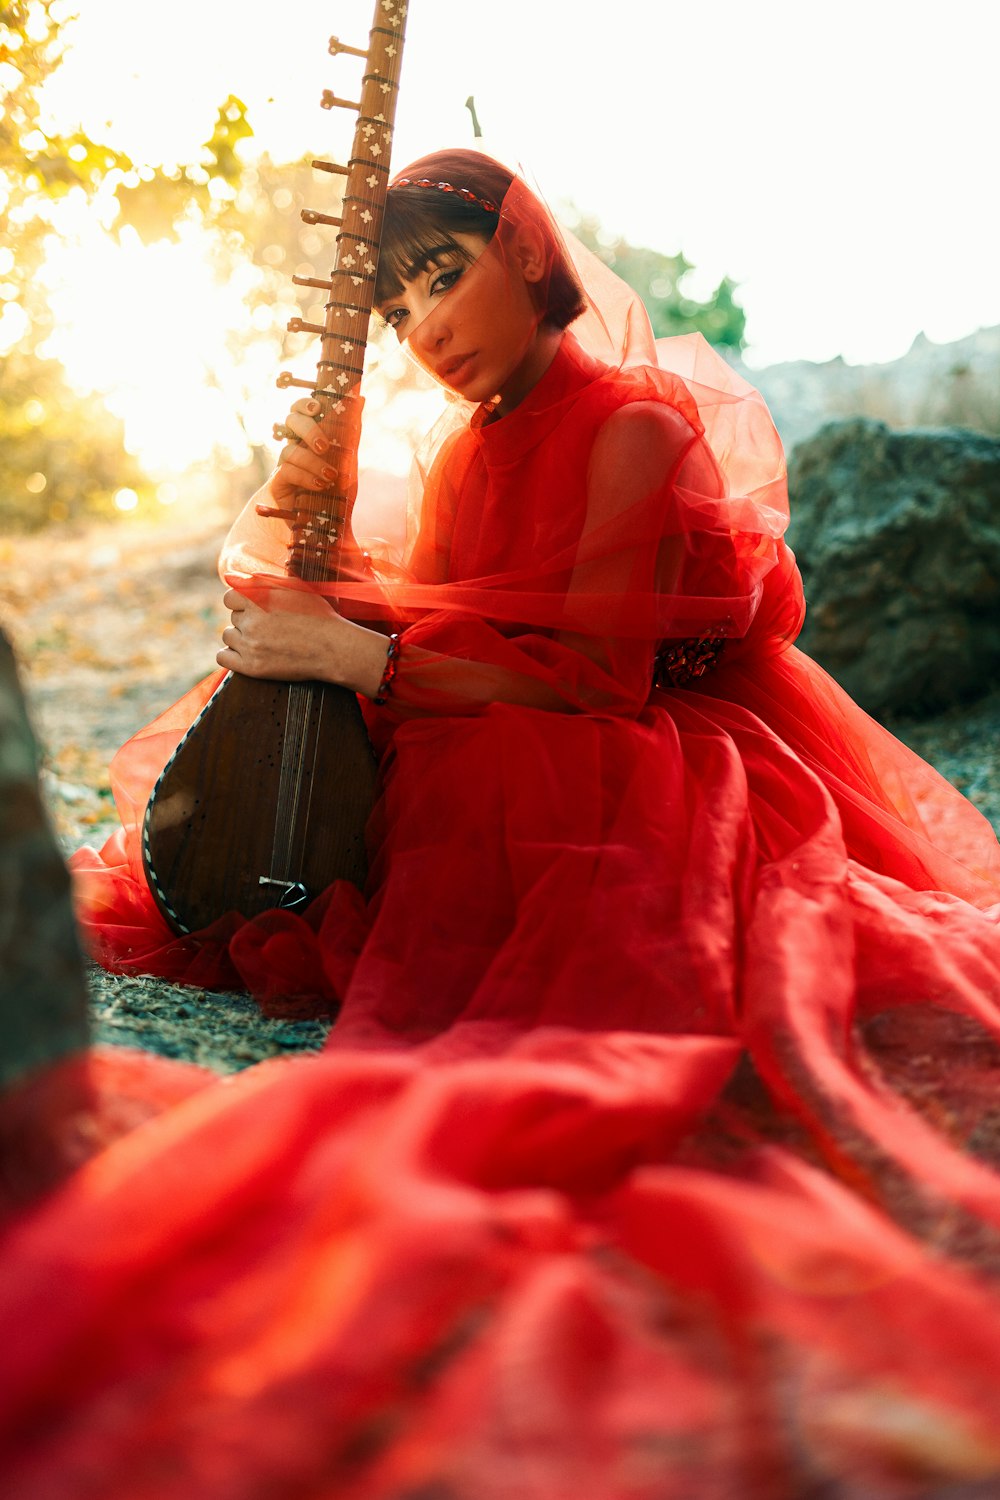 赤いドレスを着た女性がギターを持っている